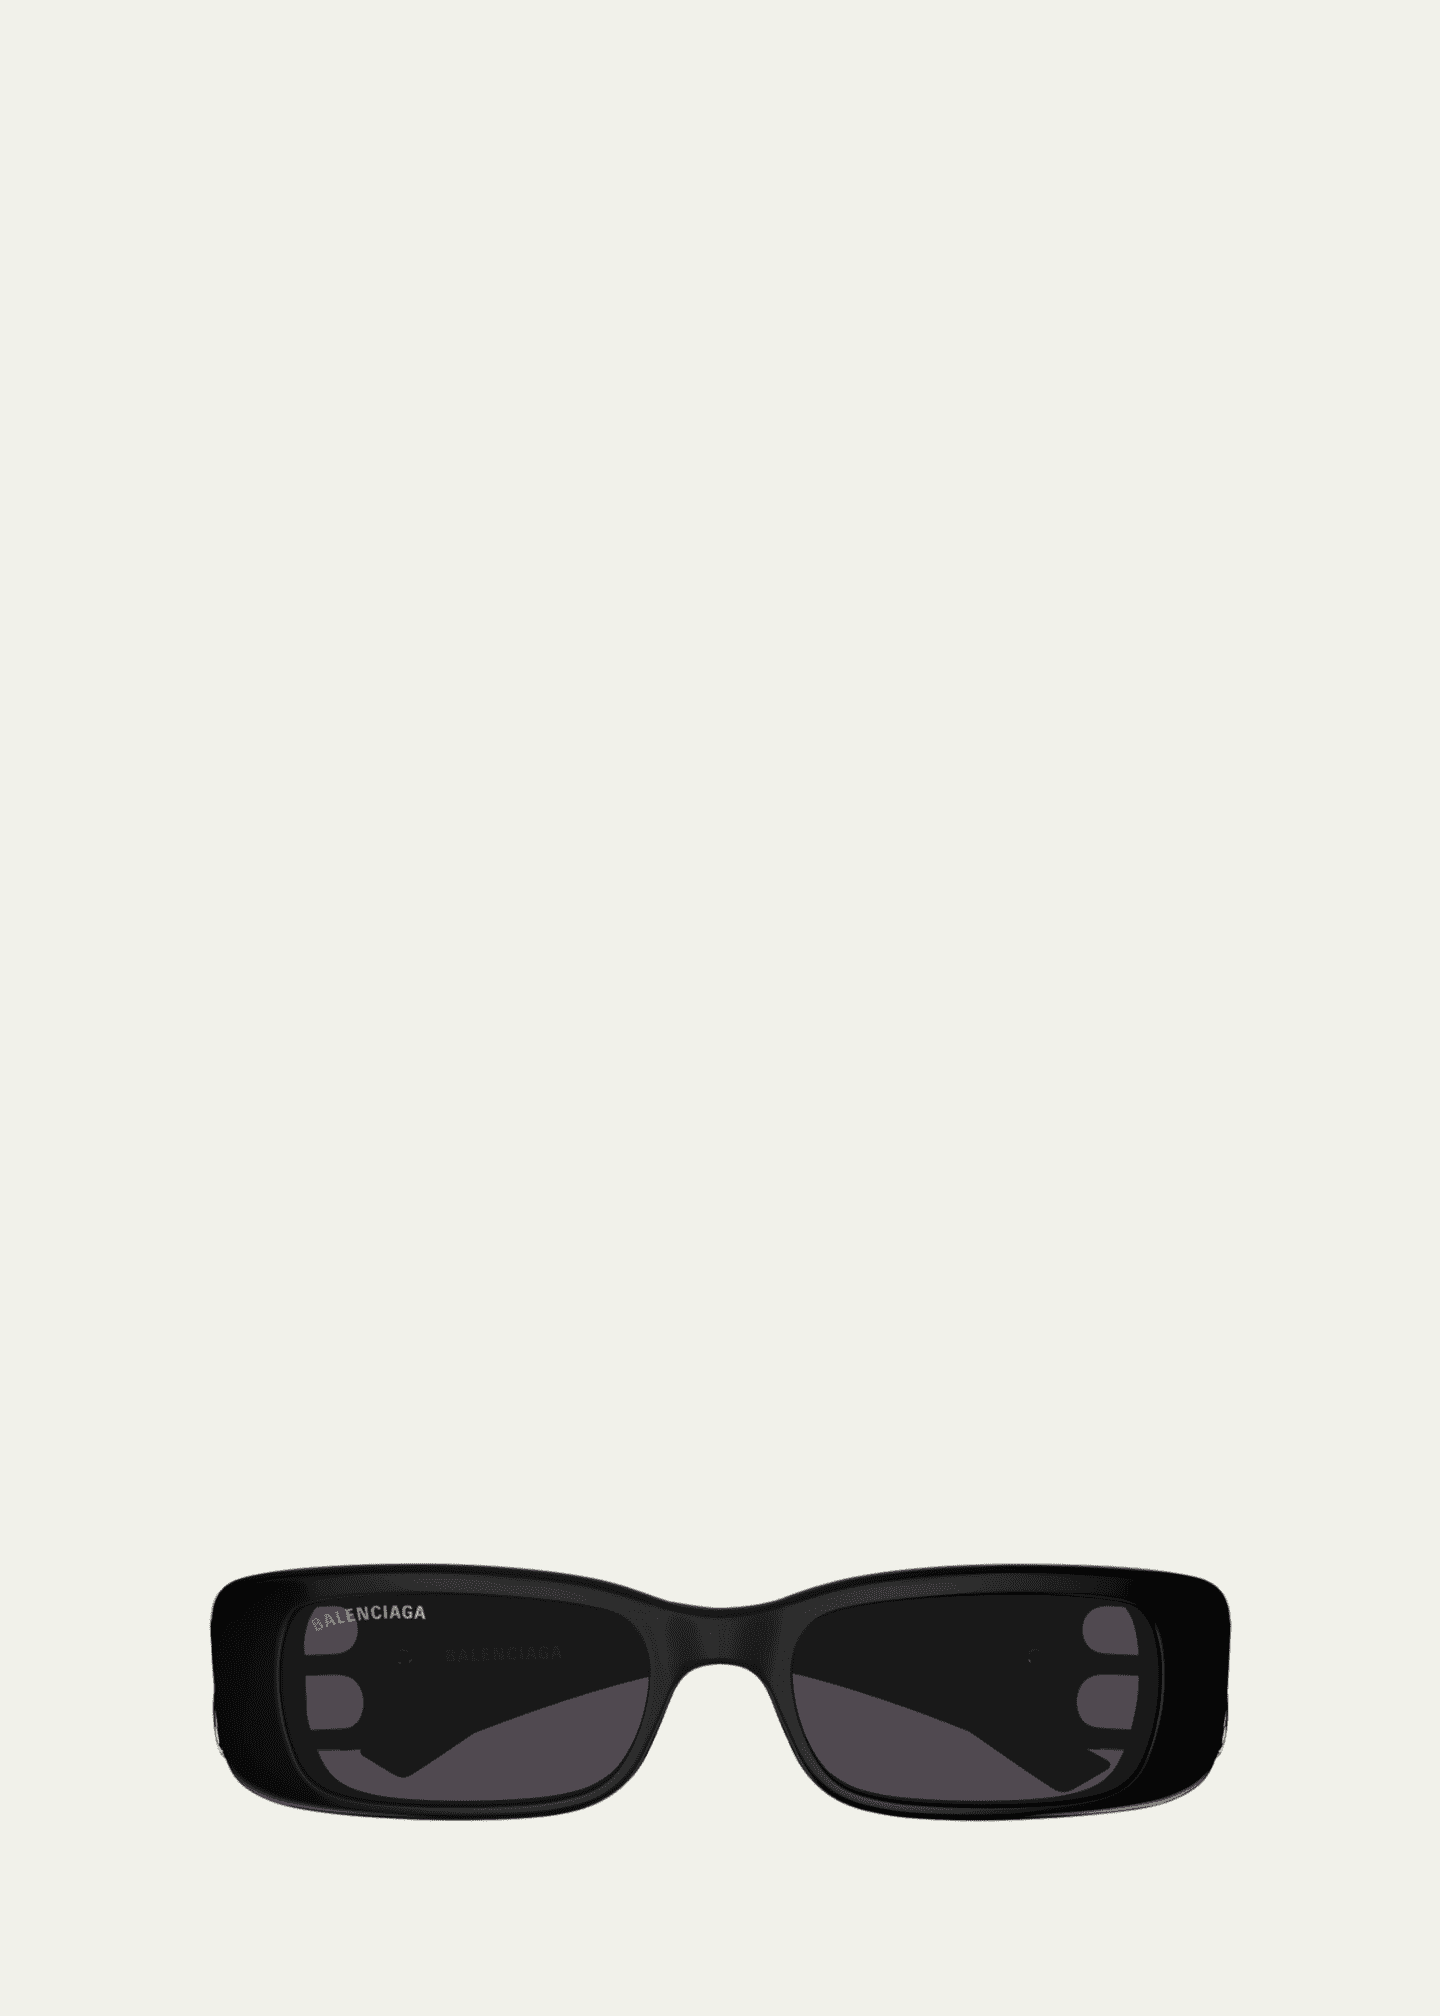 Balenciaga Black Square Glasses